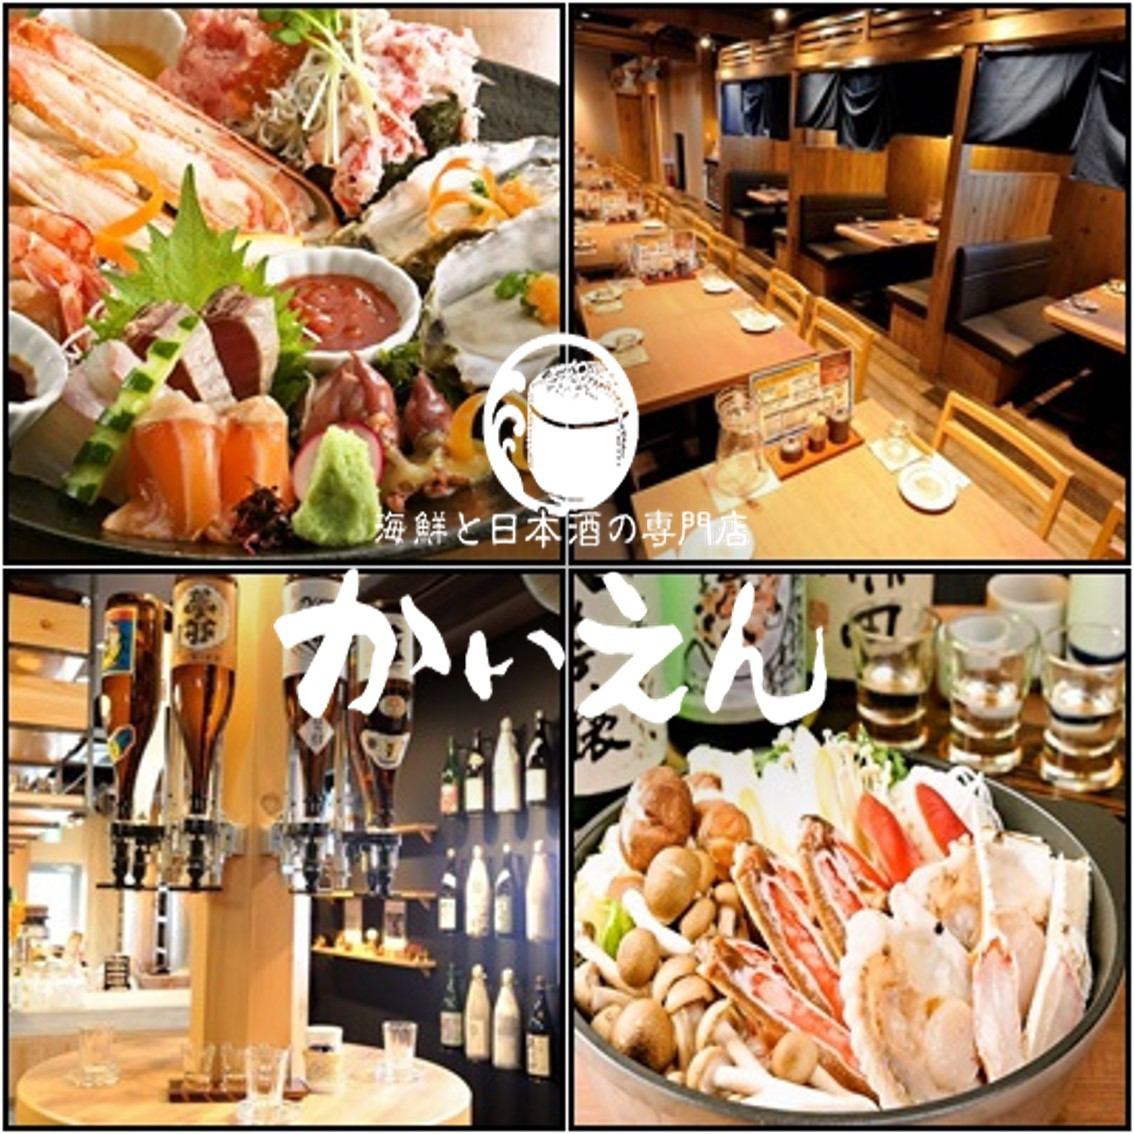 新鮮な魚介とセルフドリンクが楽しい、日本酒が自慢の海鮮居酒屋